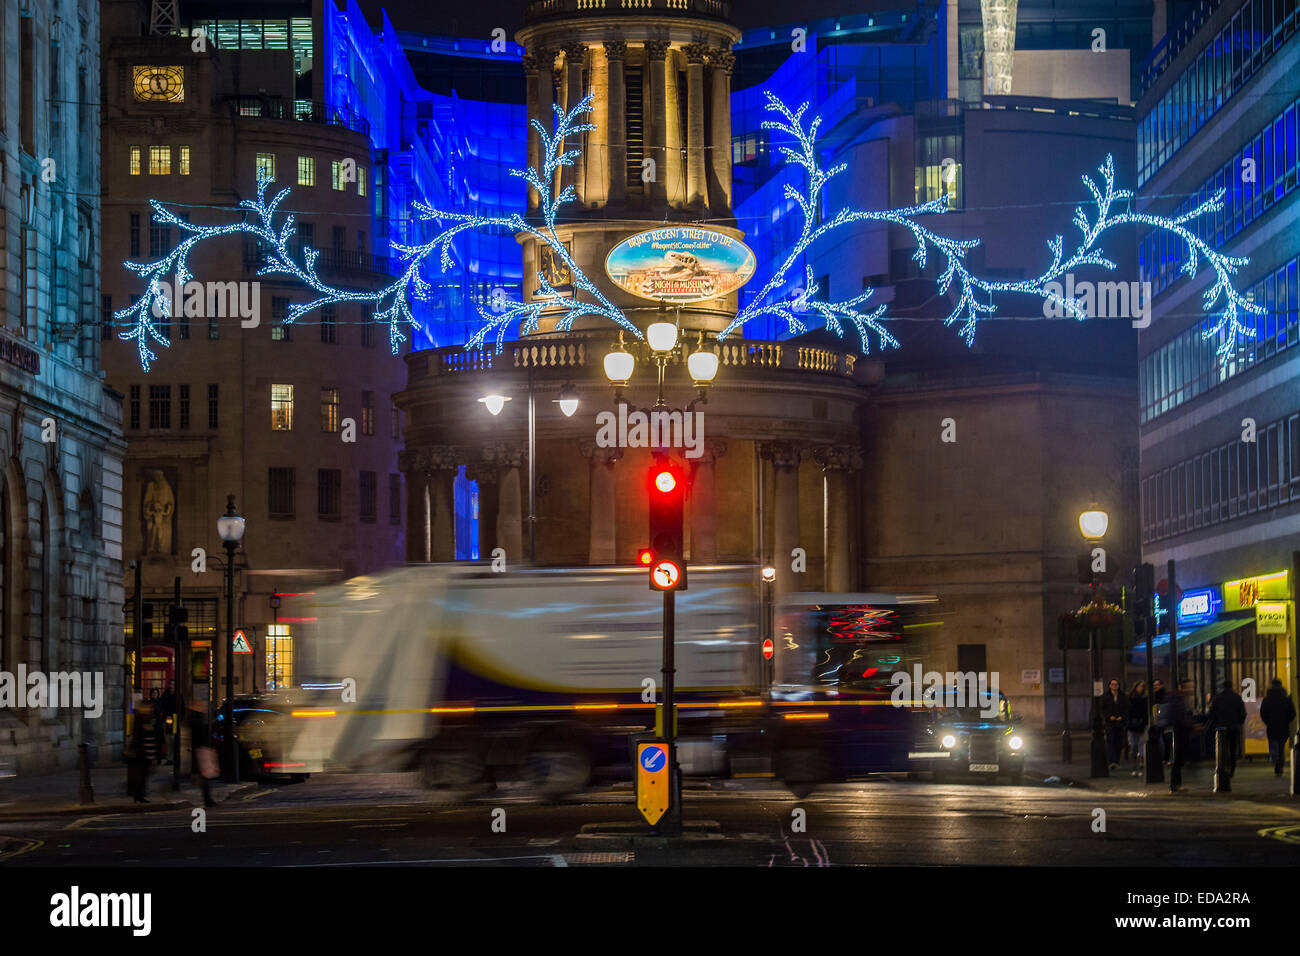 Londres, Royaume-Uni. 06Th Jan, 2015. Le jour de l'an sur Oxford et Regent Streets - les gens n'ont pas été apaisés par excès de Noël ou le temps froid. Ils continuent à chercher des bonnes affaires en grand nombre, dans la douce lueur des lumières de Noël. Crédit : Guy Bell/Alamy Live News Banque D'Images